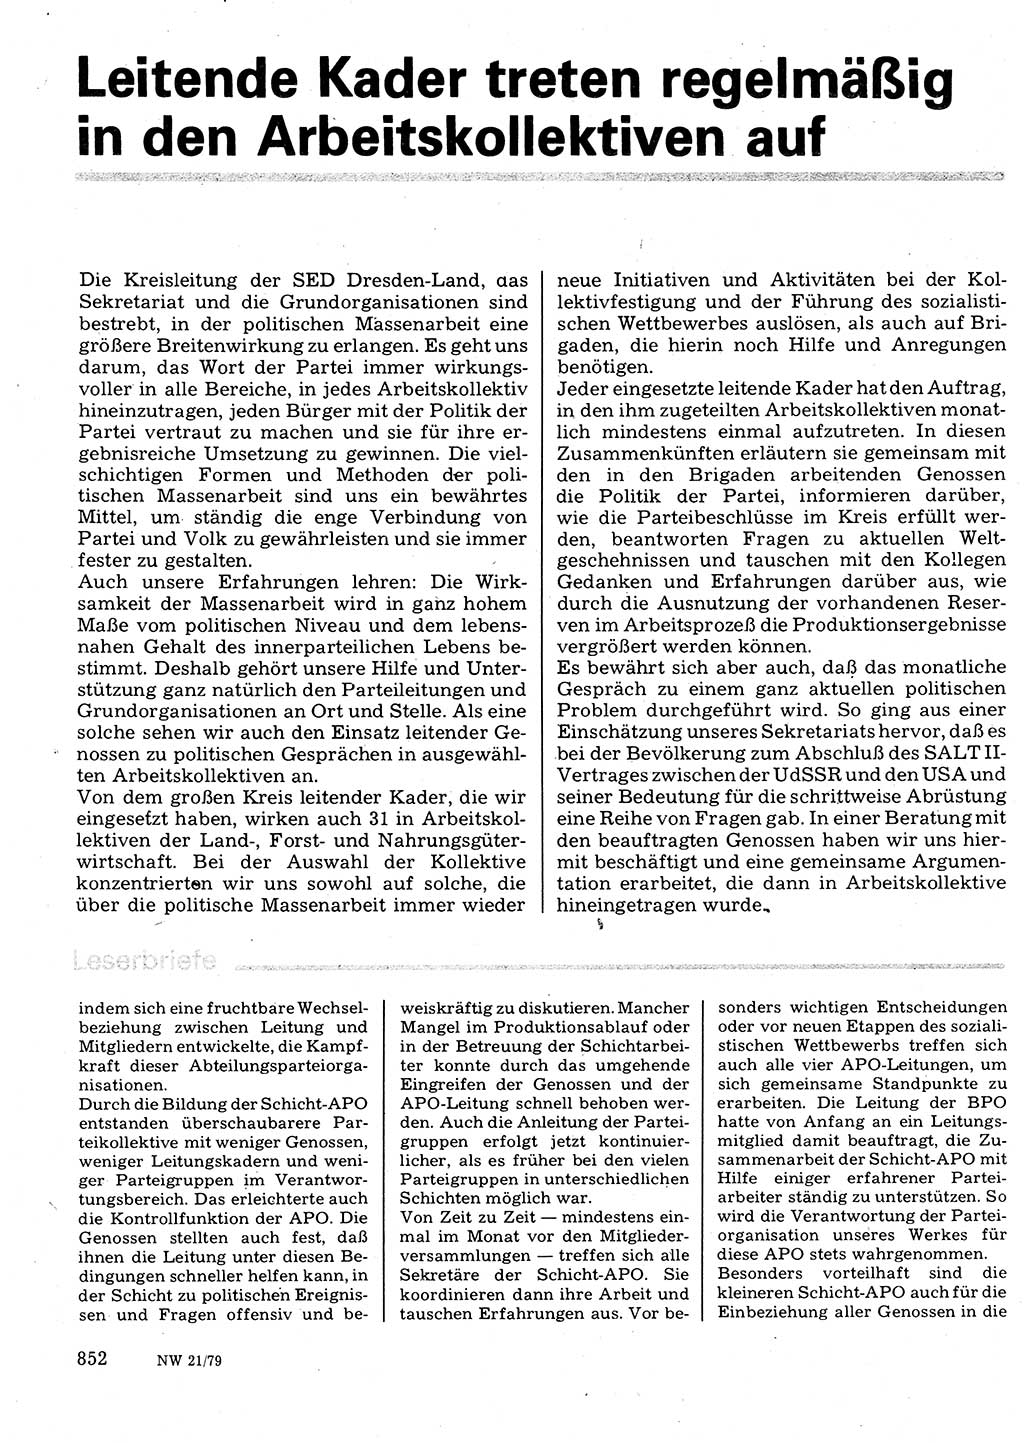 Neuer Weg (NW), Organ des Zentralkomitees (ZK) der SED (Sozialistische Einheitspartei Deutschlands) für Fragen des Parteilebens, 34. Jahrgang [Deutsche Demokratische Republik (DDR)] 1979, Seite 852 (NW ZK SED DDR 1979, S. 852)